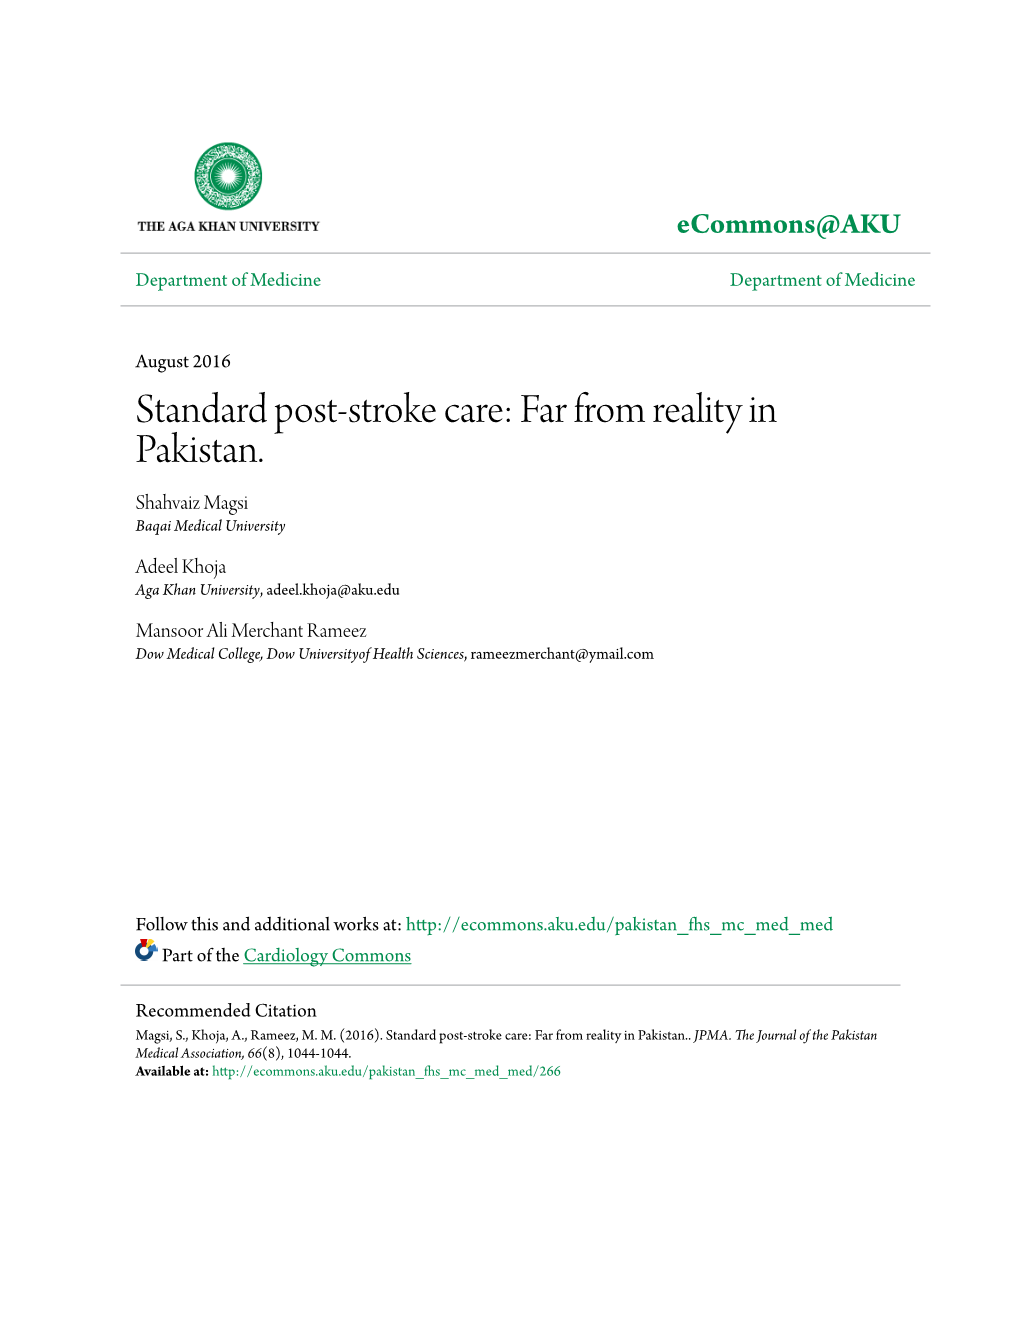 Standard Post-Stroke Care: Far from Reality in Pakistan